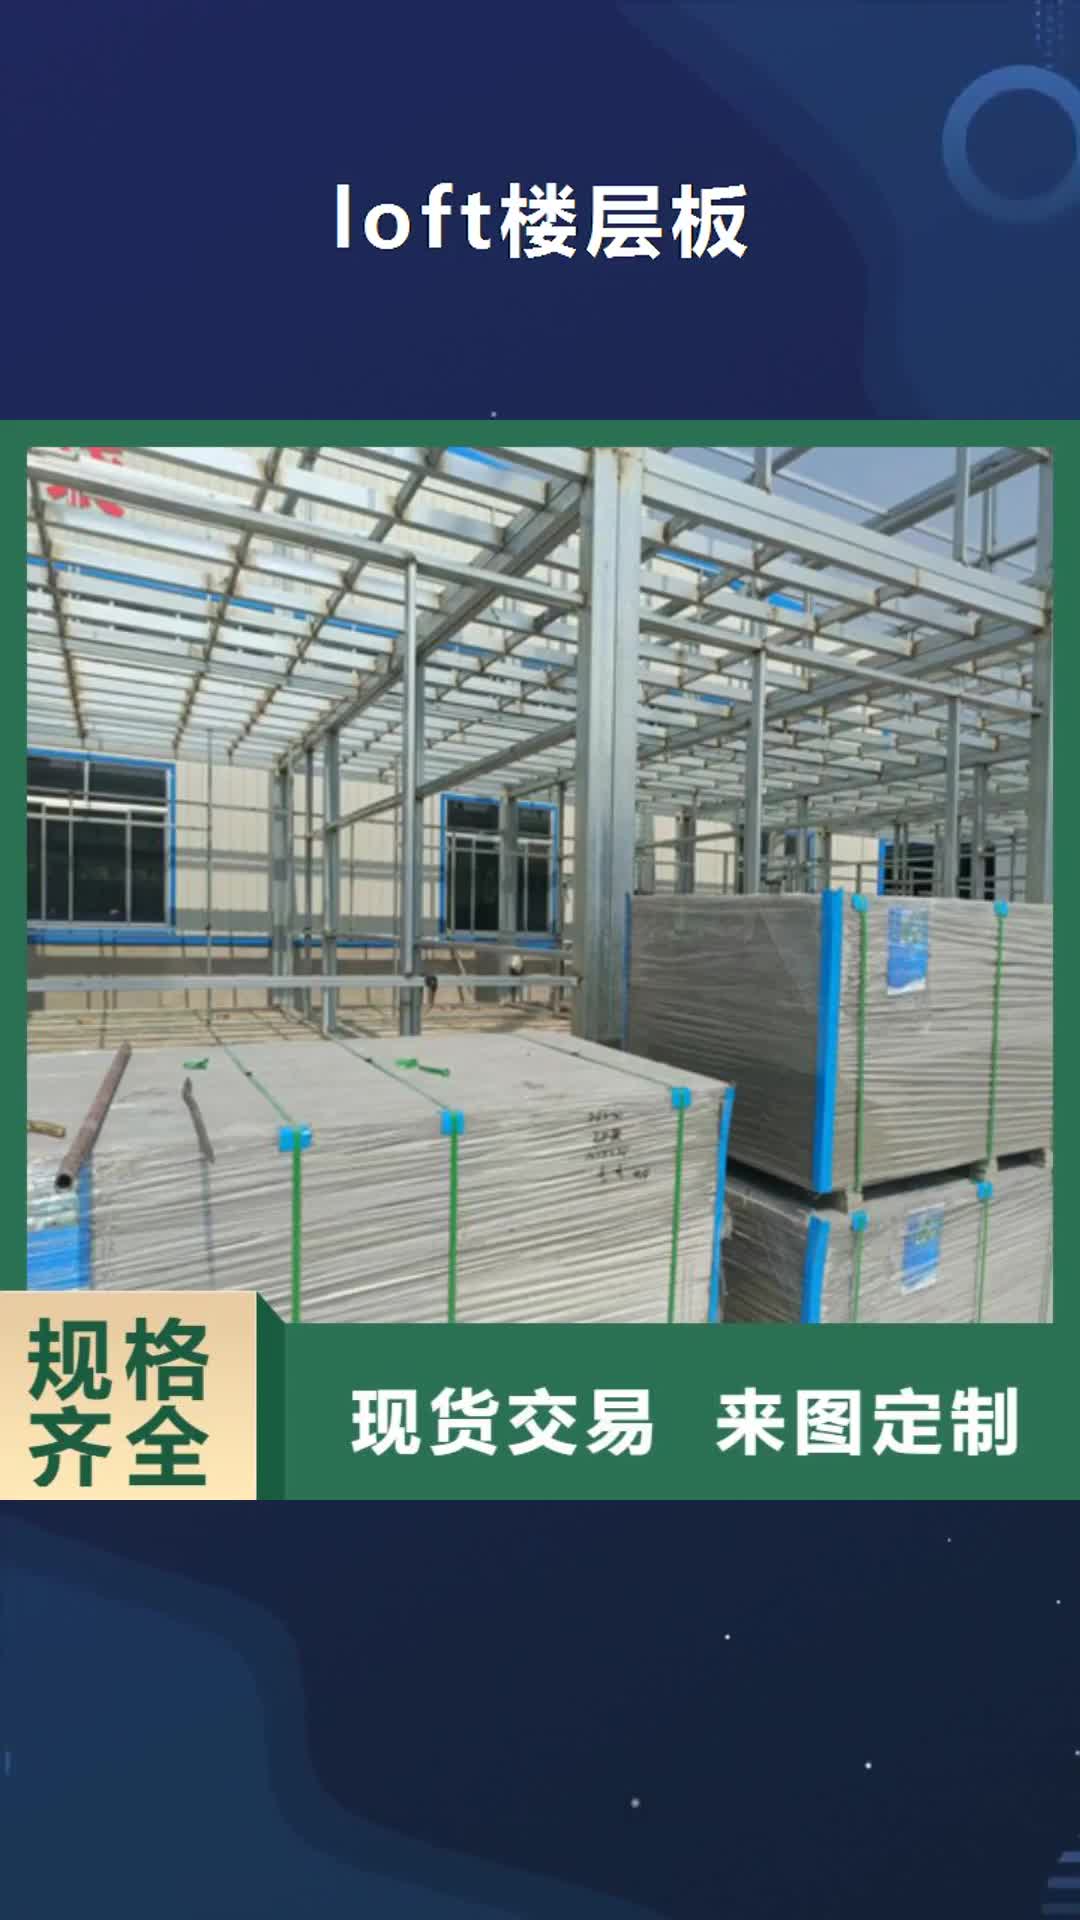 滁州【loft楼层板】 水泥纤维板专业生产品质保证